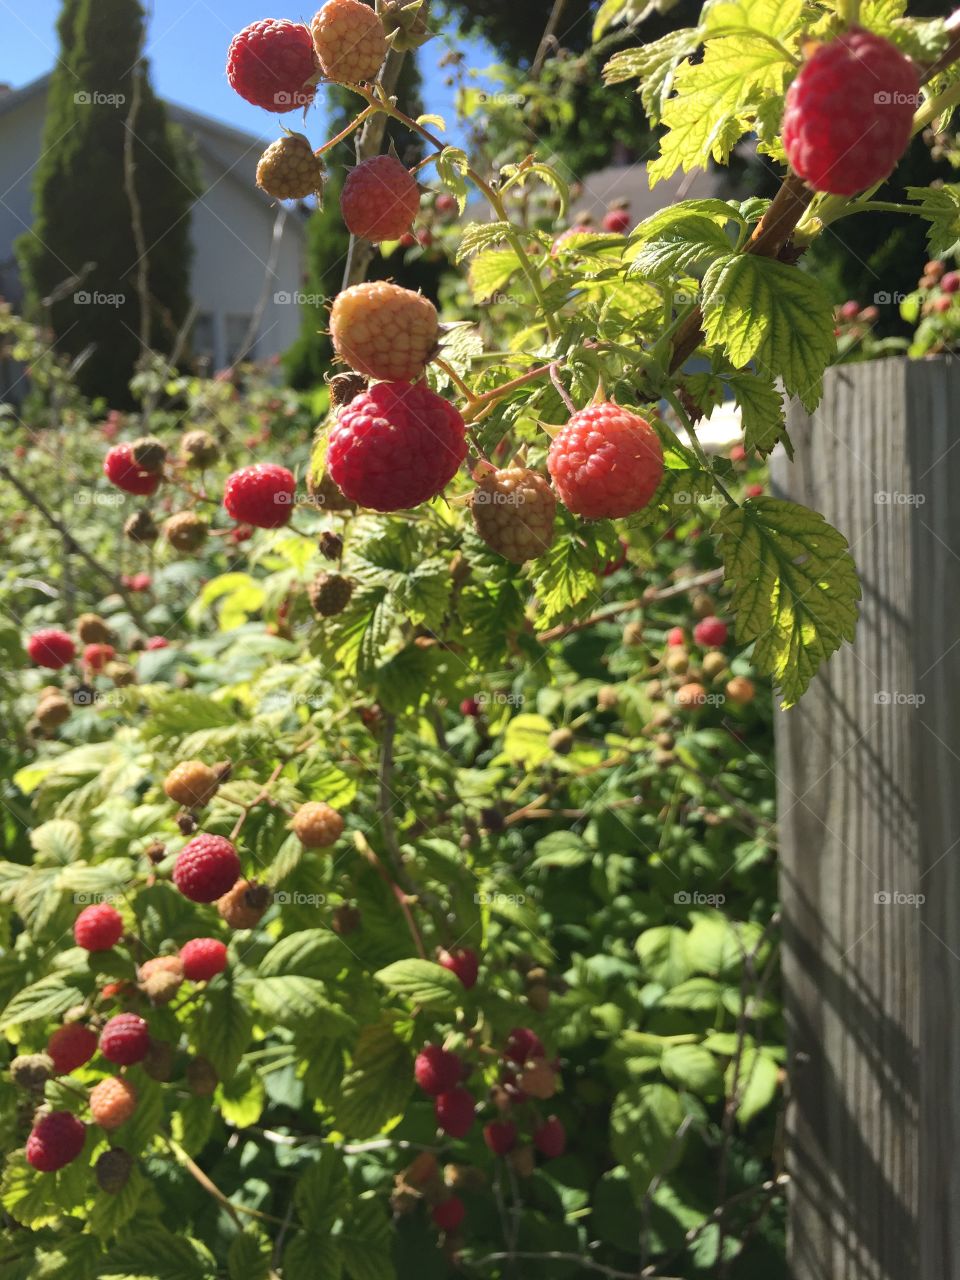 Raspberries growing in the garden 